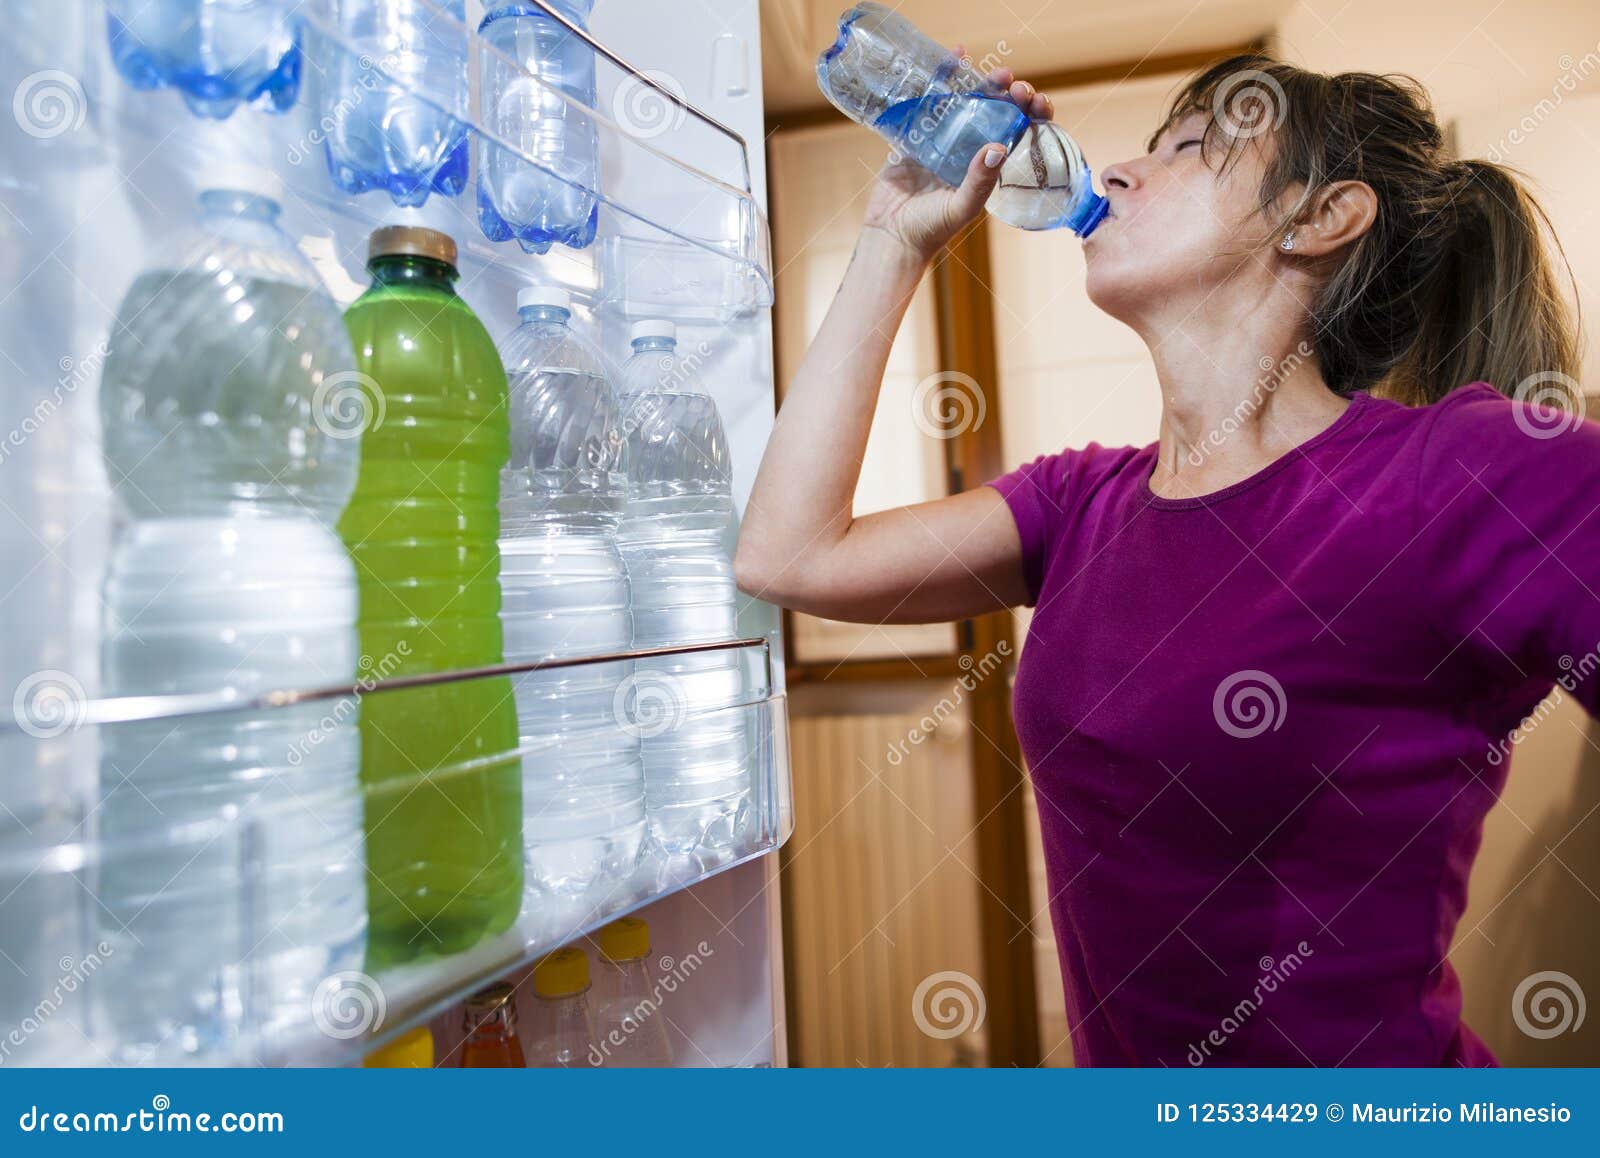 https://thumbs.dreamstime.com/z/sweaty-woman-drinking-water-seen-inside-fridge-sweaty-woman-drinking-water-point-view-inside-open-fridge-125334429.jpg